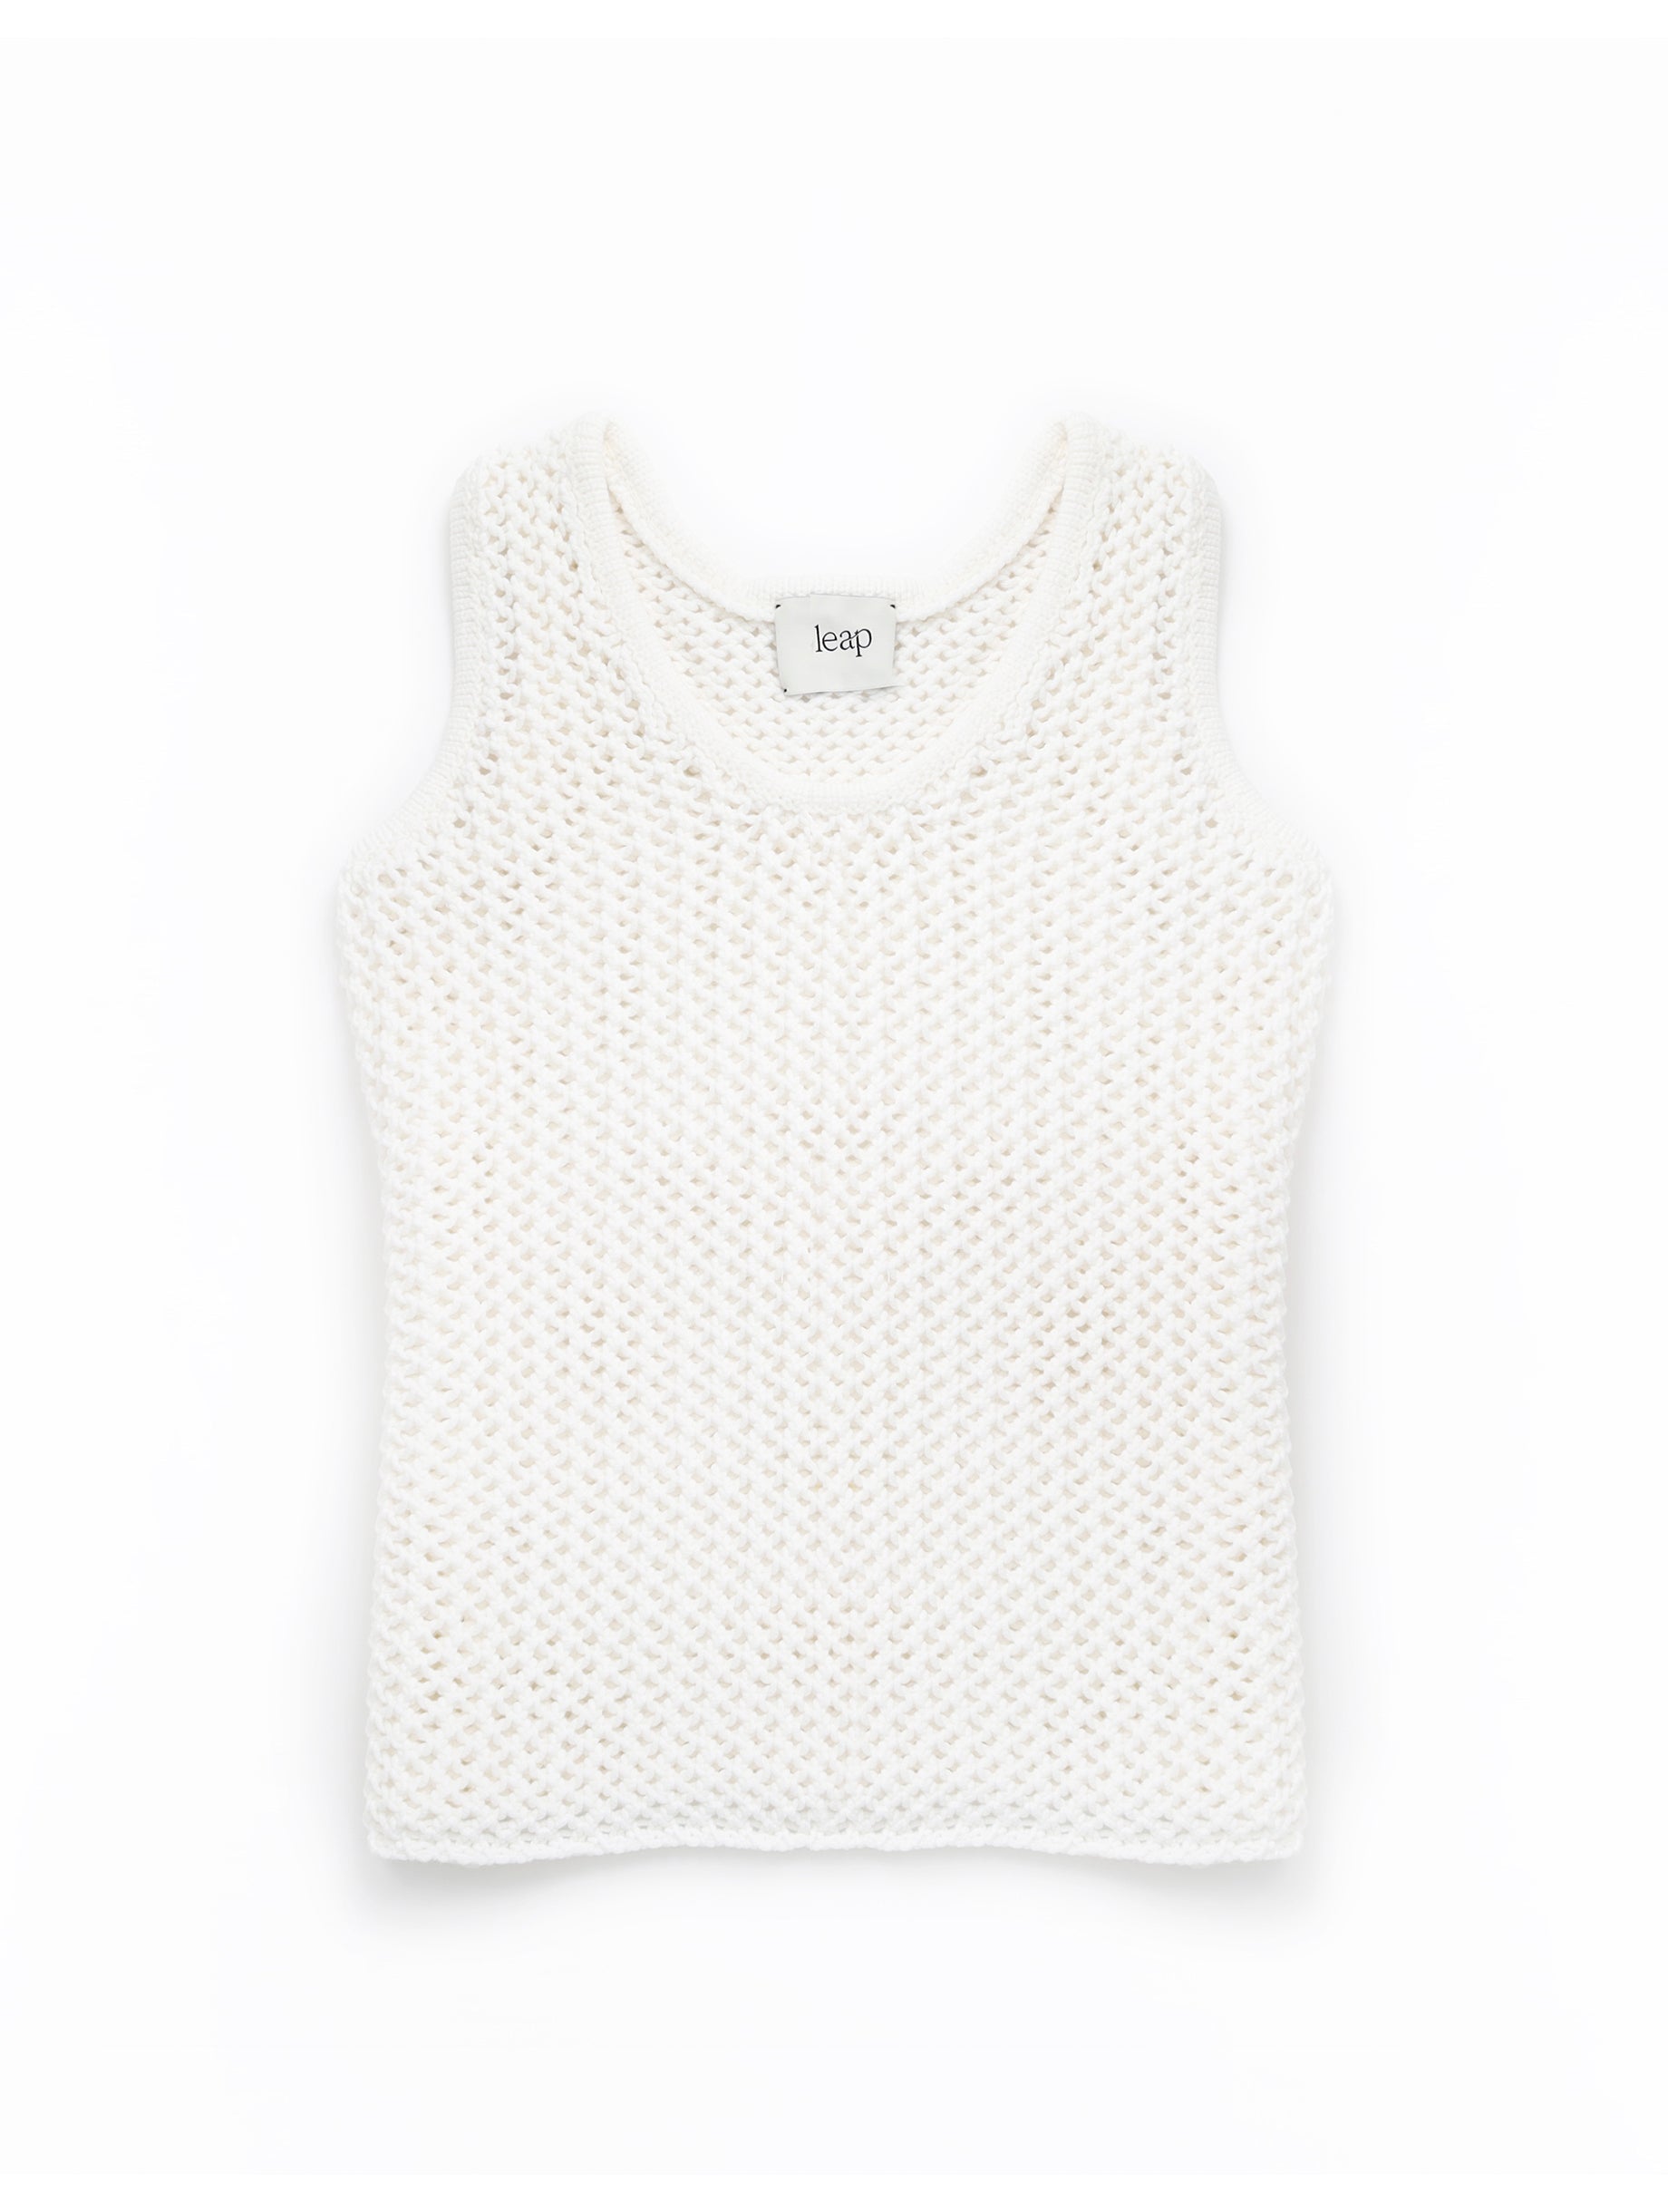 MONA Open-knit tank-top white